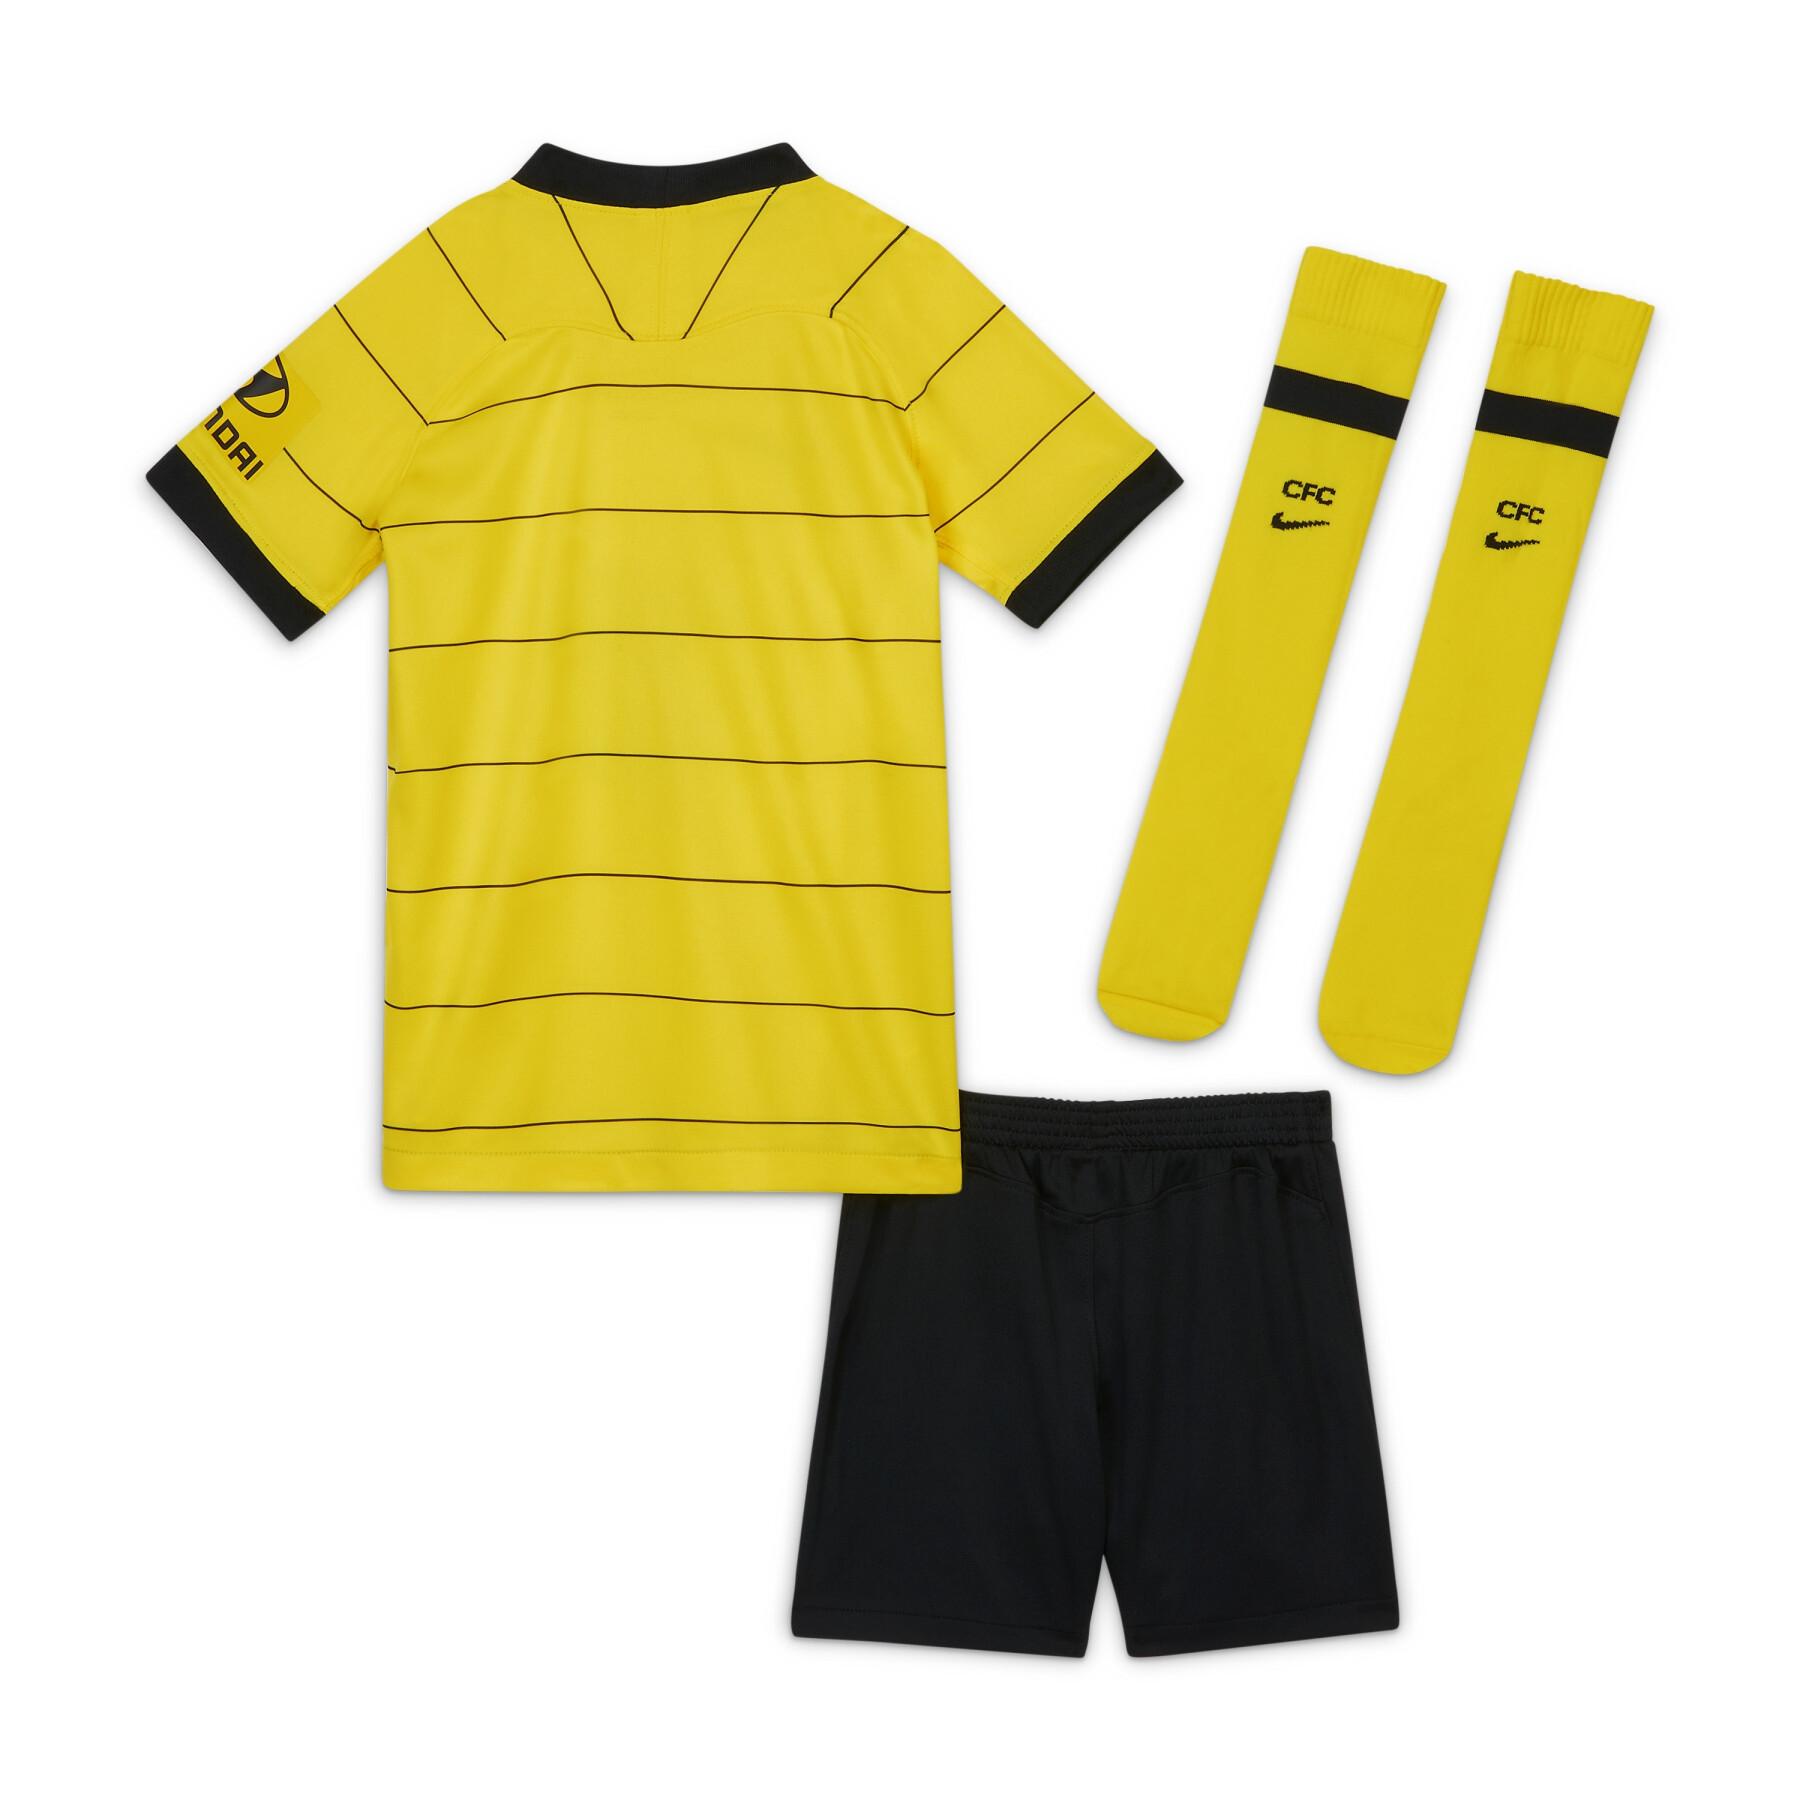 Outdoor mini kit for children Chelsea 2021/22